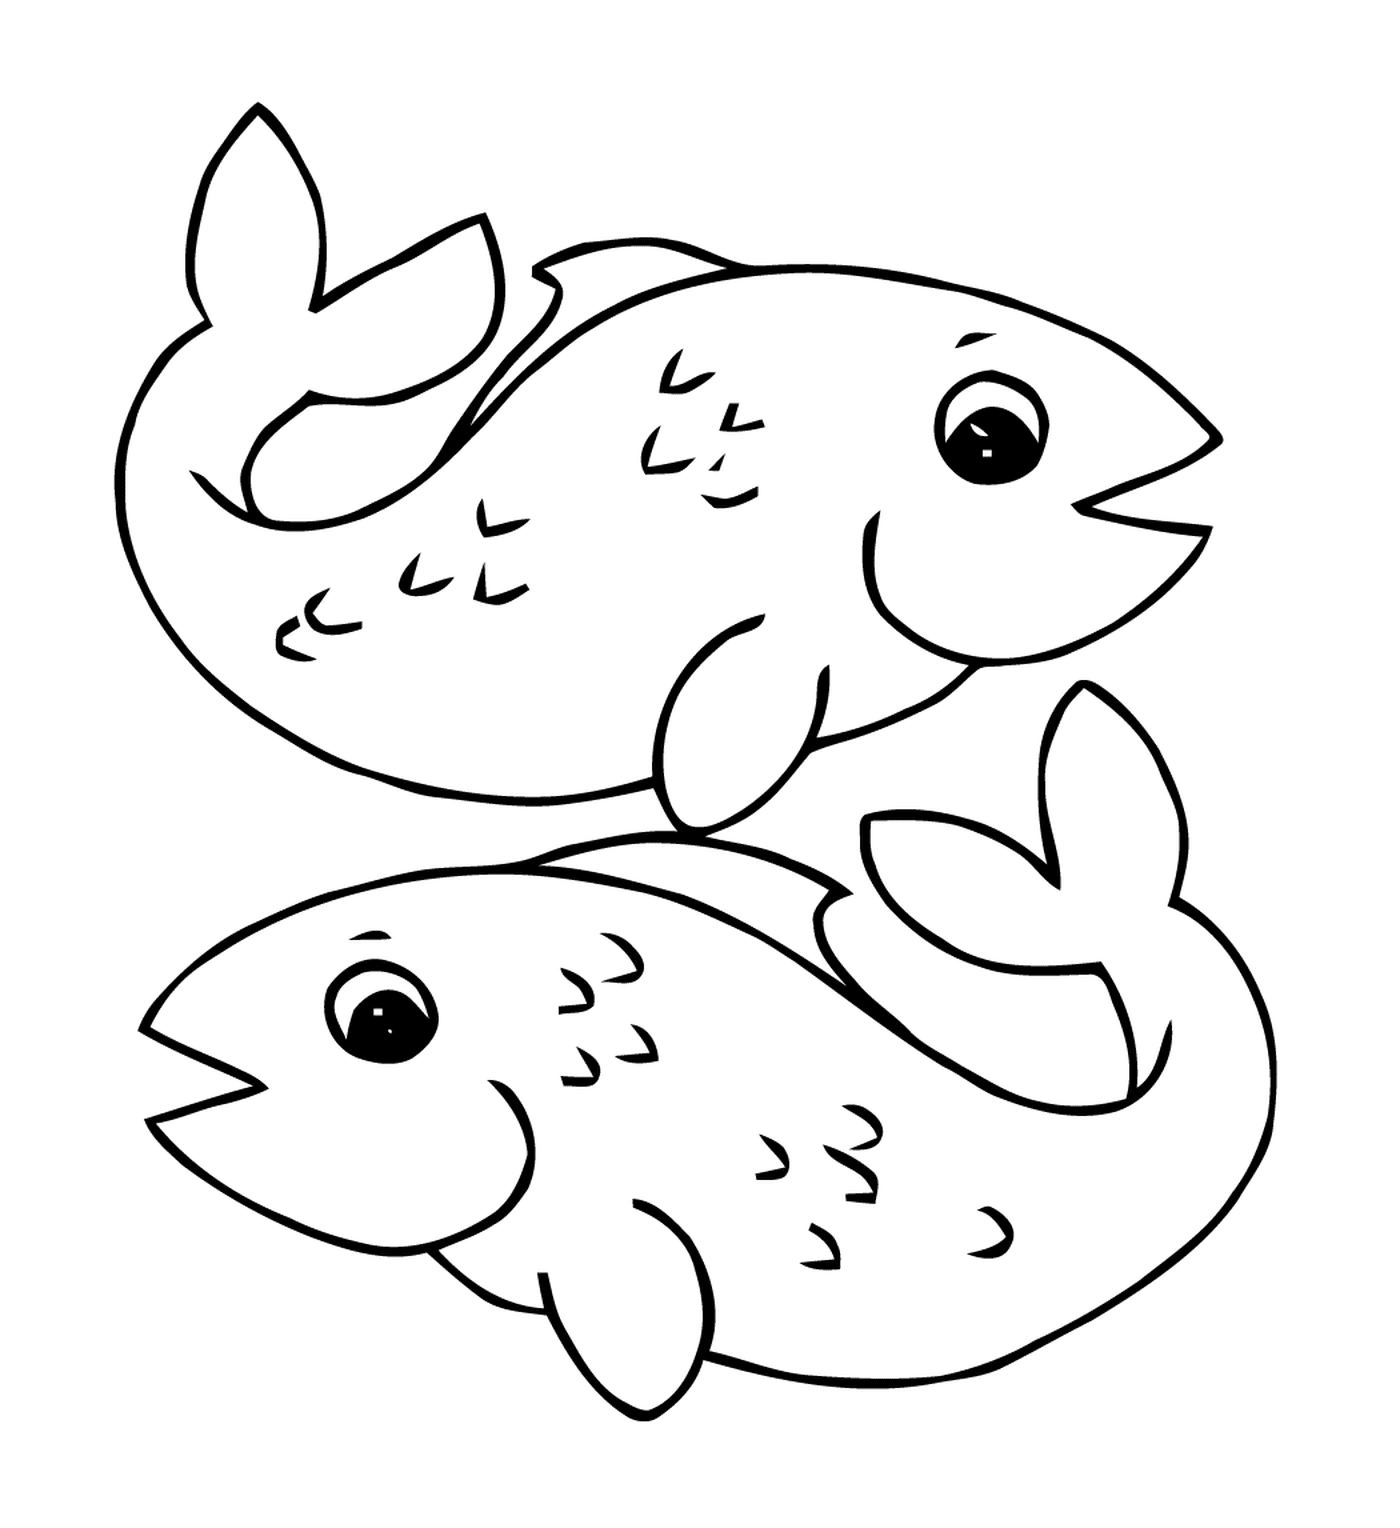  Два спутника, плавающие рыбу 